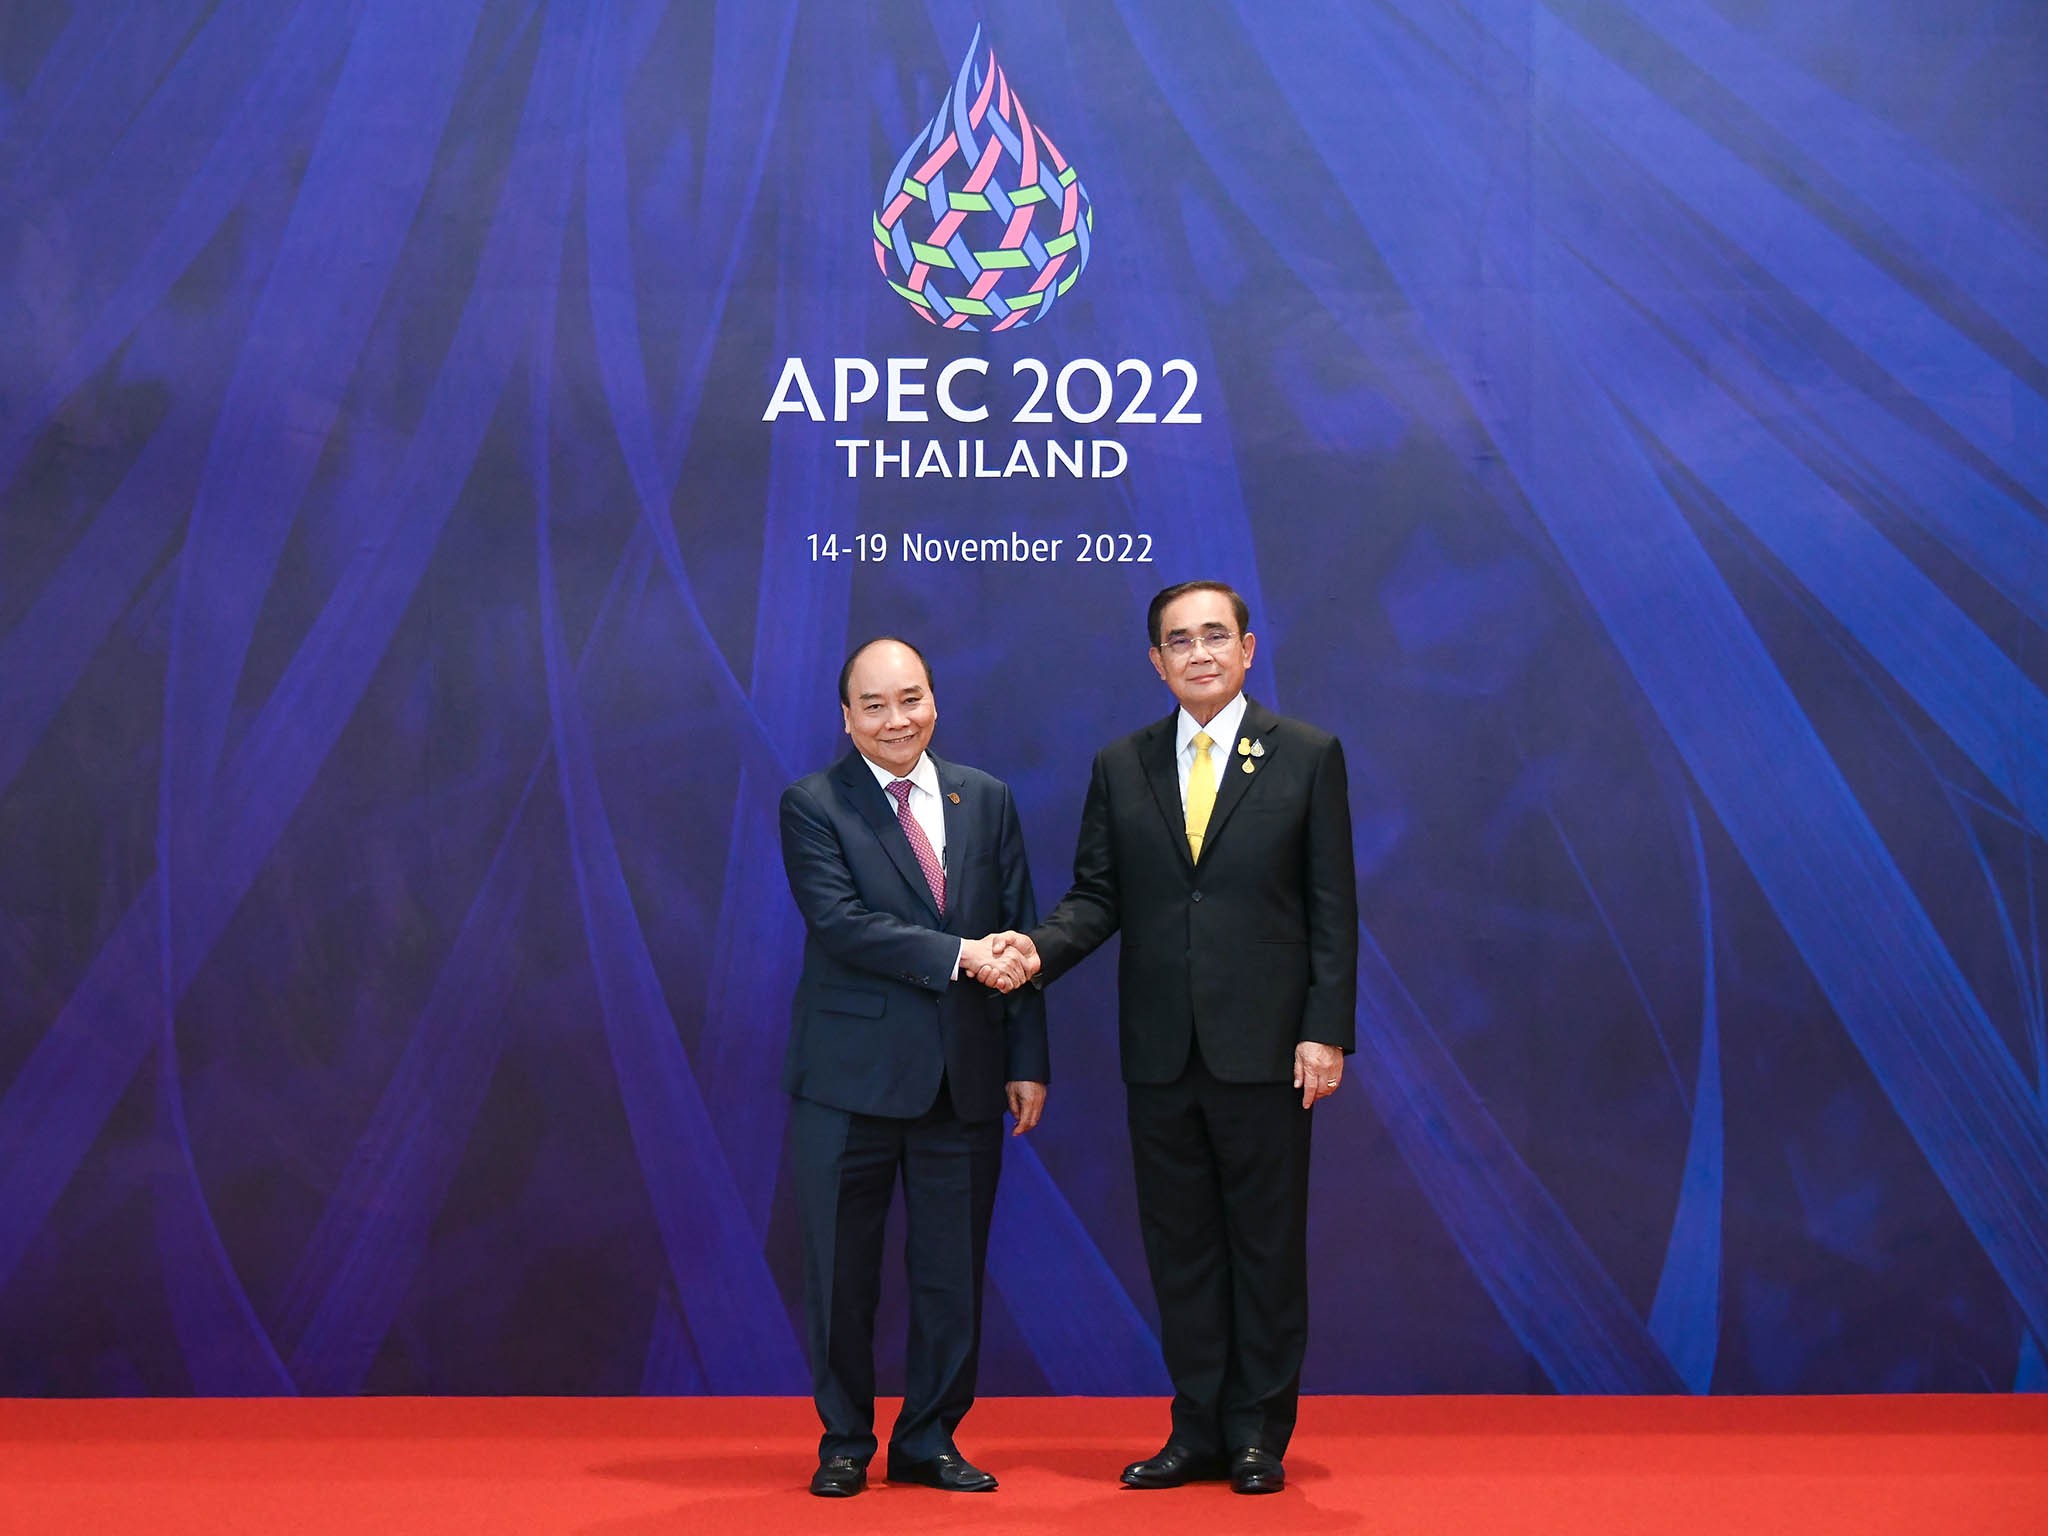 Chủ tịch nước Nguyễn Xuân Phúc thăm Thái Lan và dự APEC 29: Chuyến đi đa thông điệp